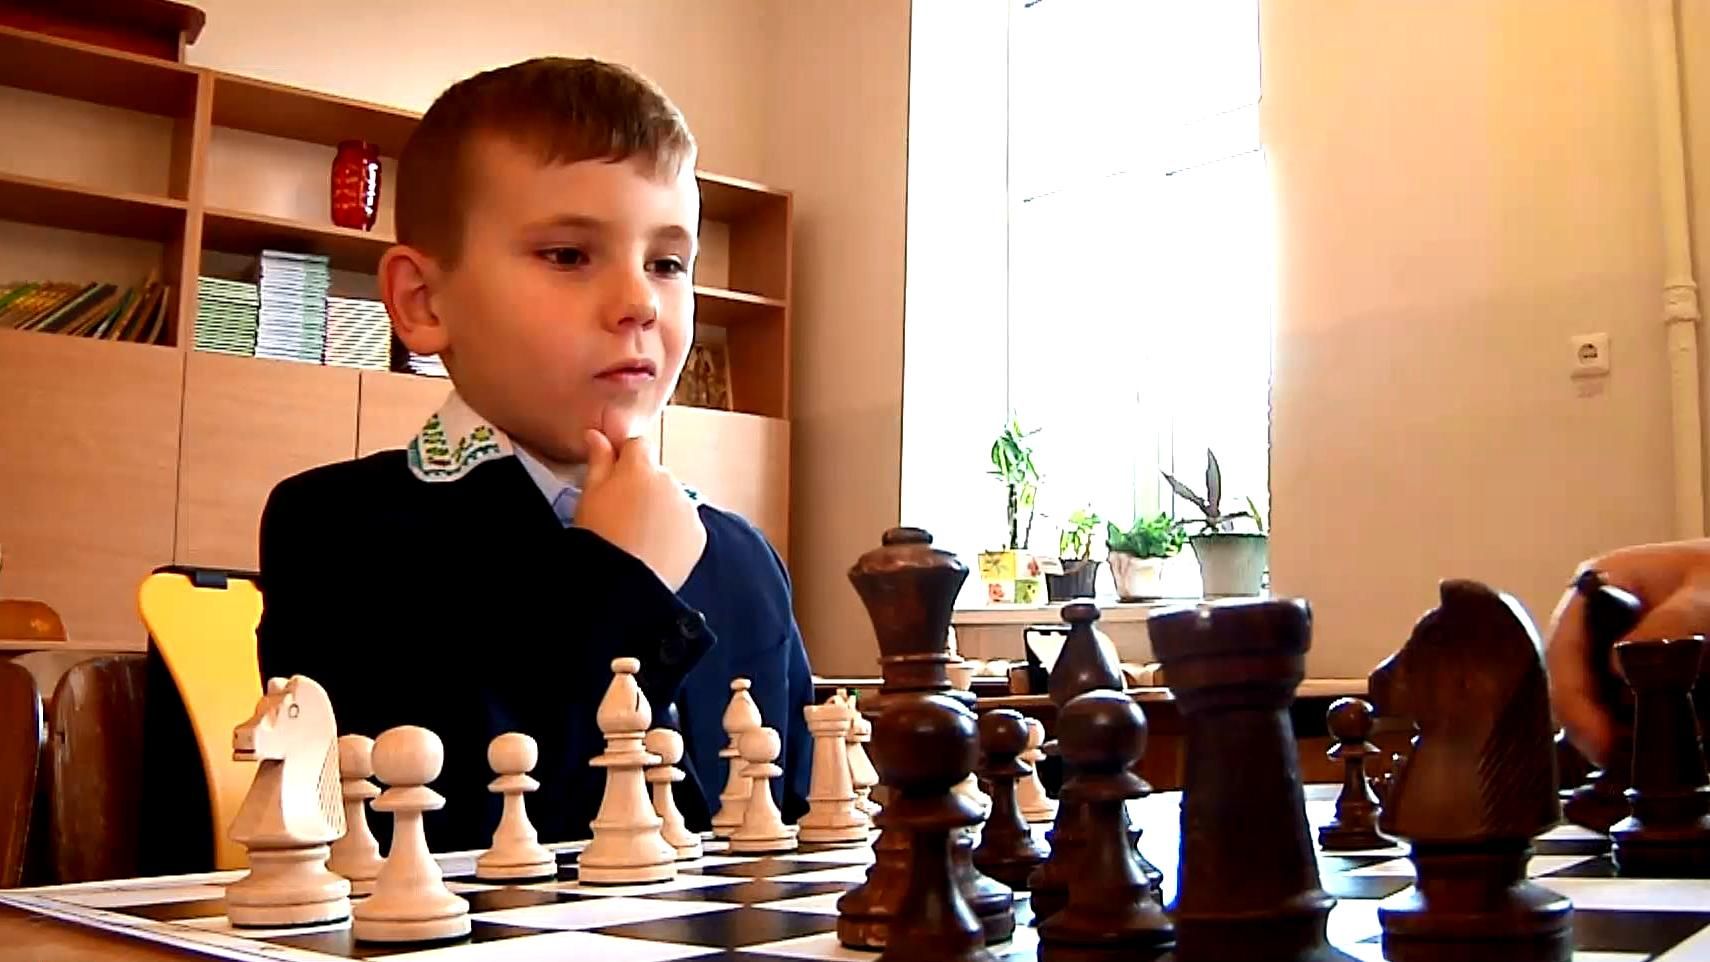 Мировая чемпионка бесплатно обучает детей игре в шахматы